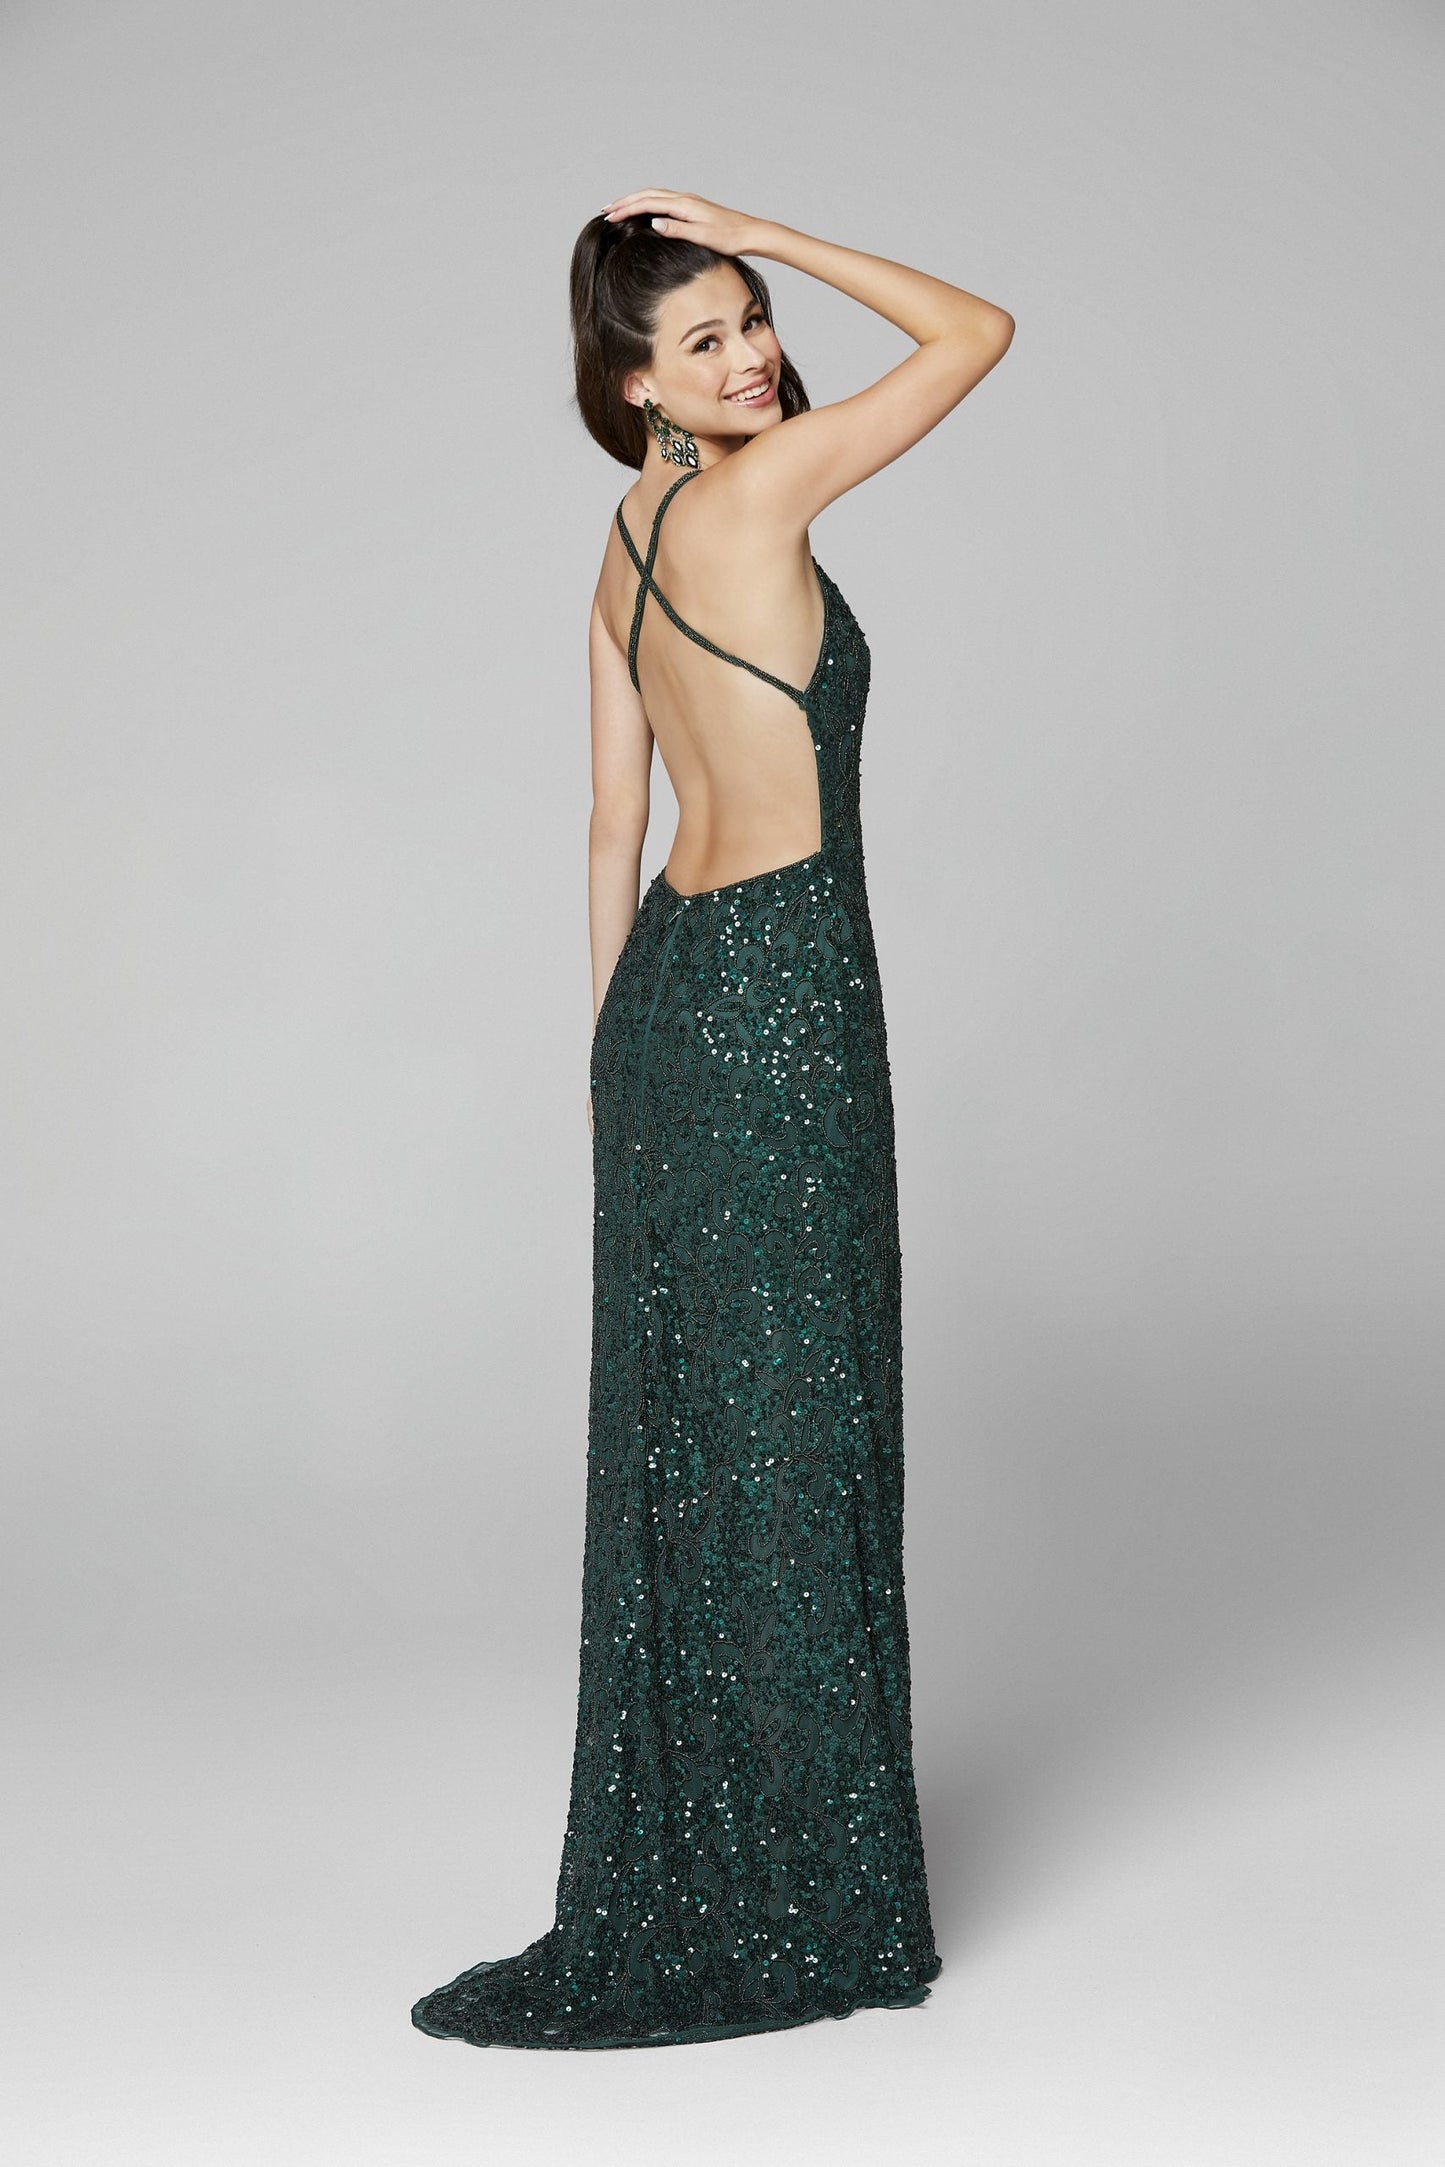 Primavera Couture 3295 Size 2, 6, 8 Emerald Prom Dress V Neckline Sequins Backless Slit Formal Evening Gown